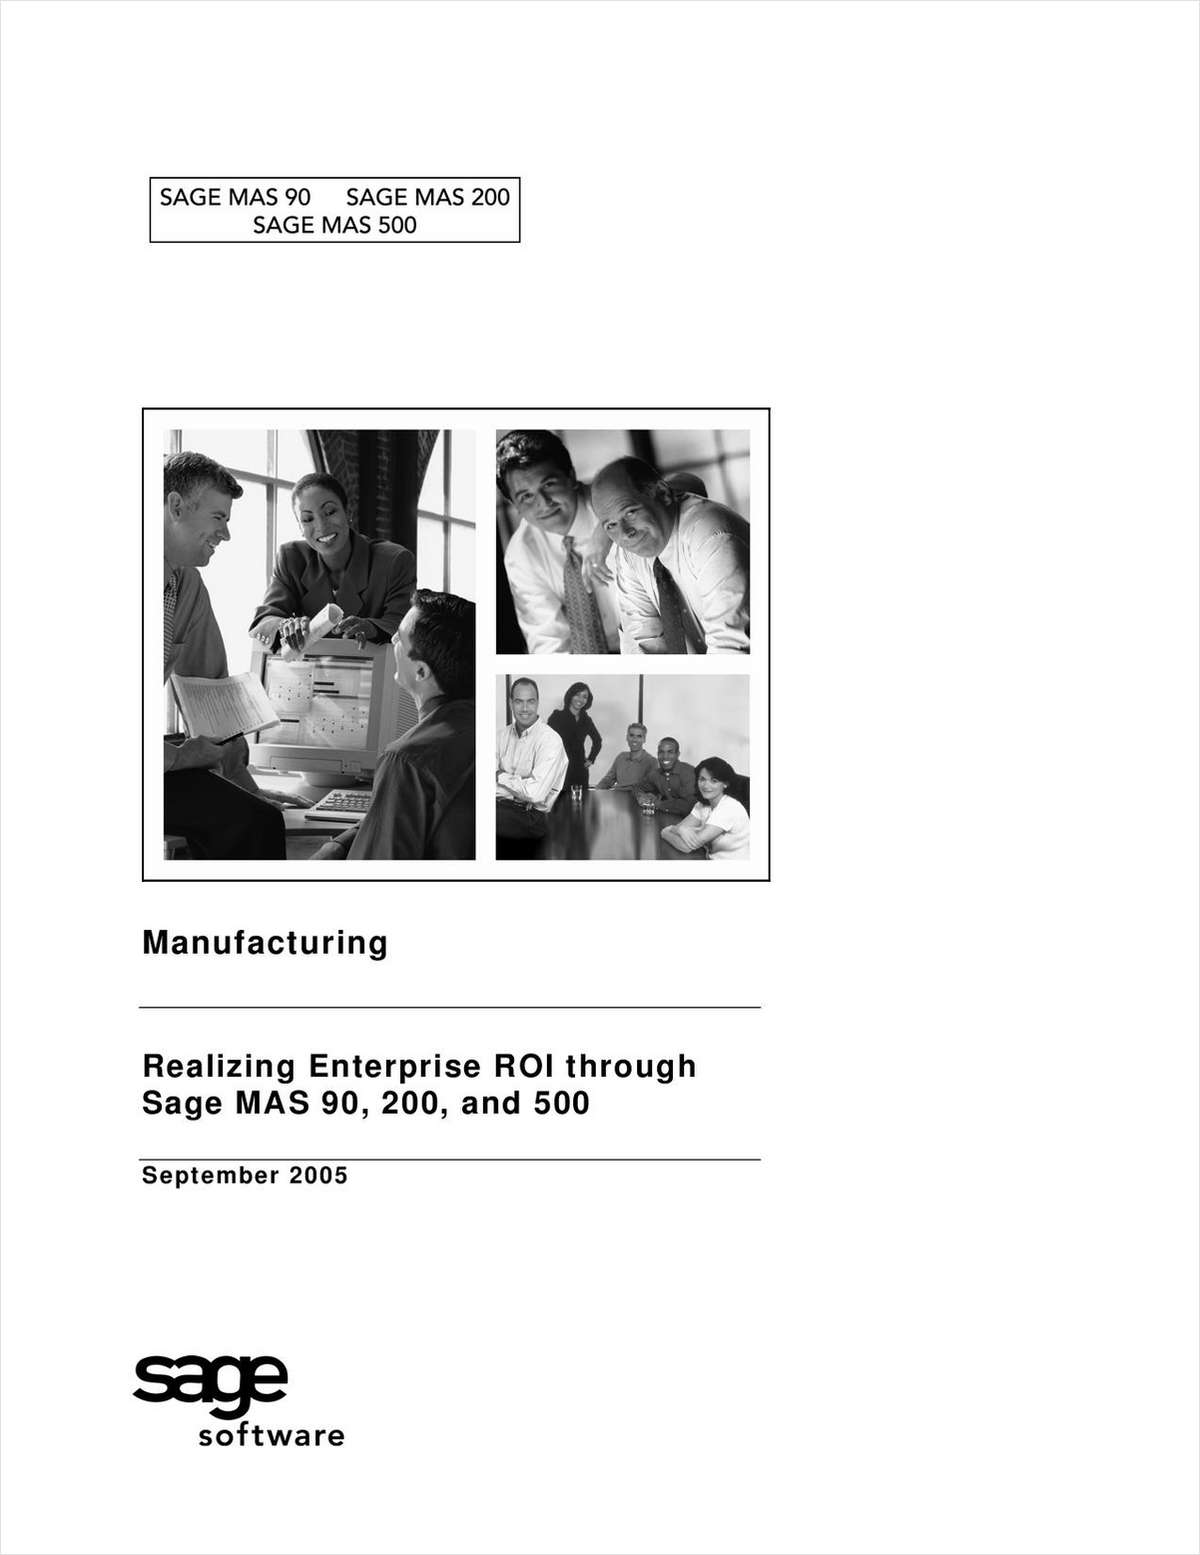 Manufacturing - Realizing Enterprise ROI through Sage MAS 90, 200 and 500